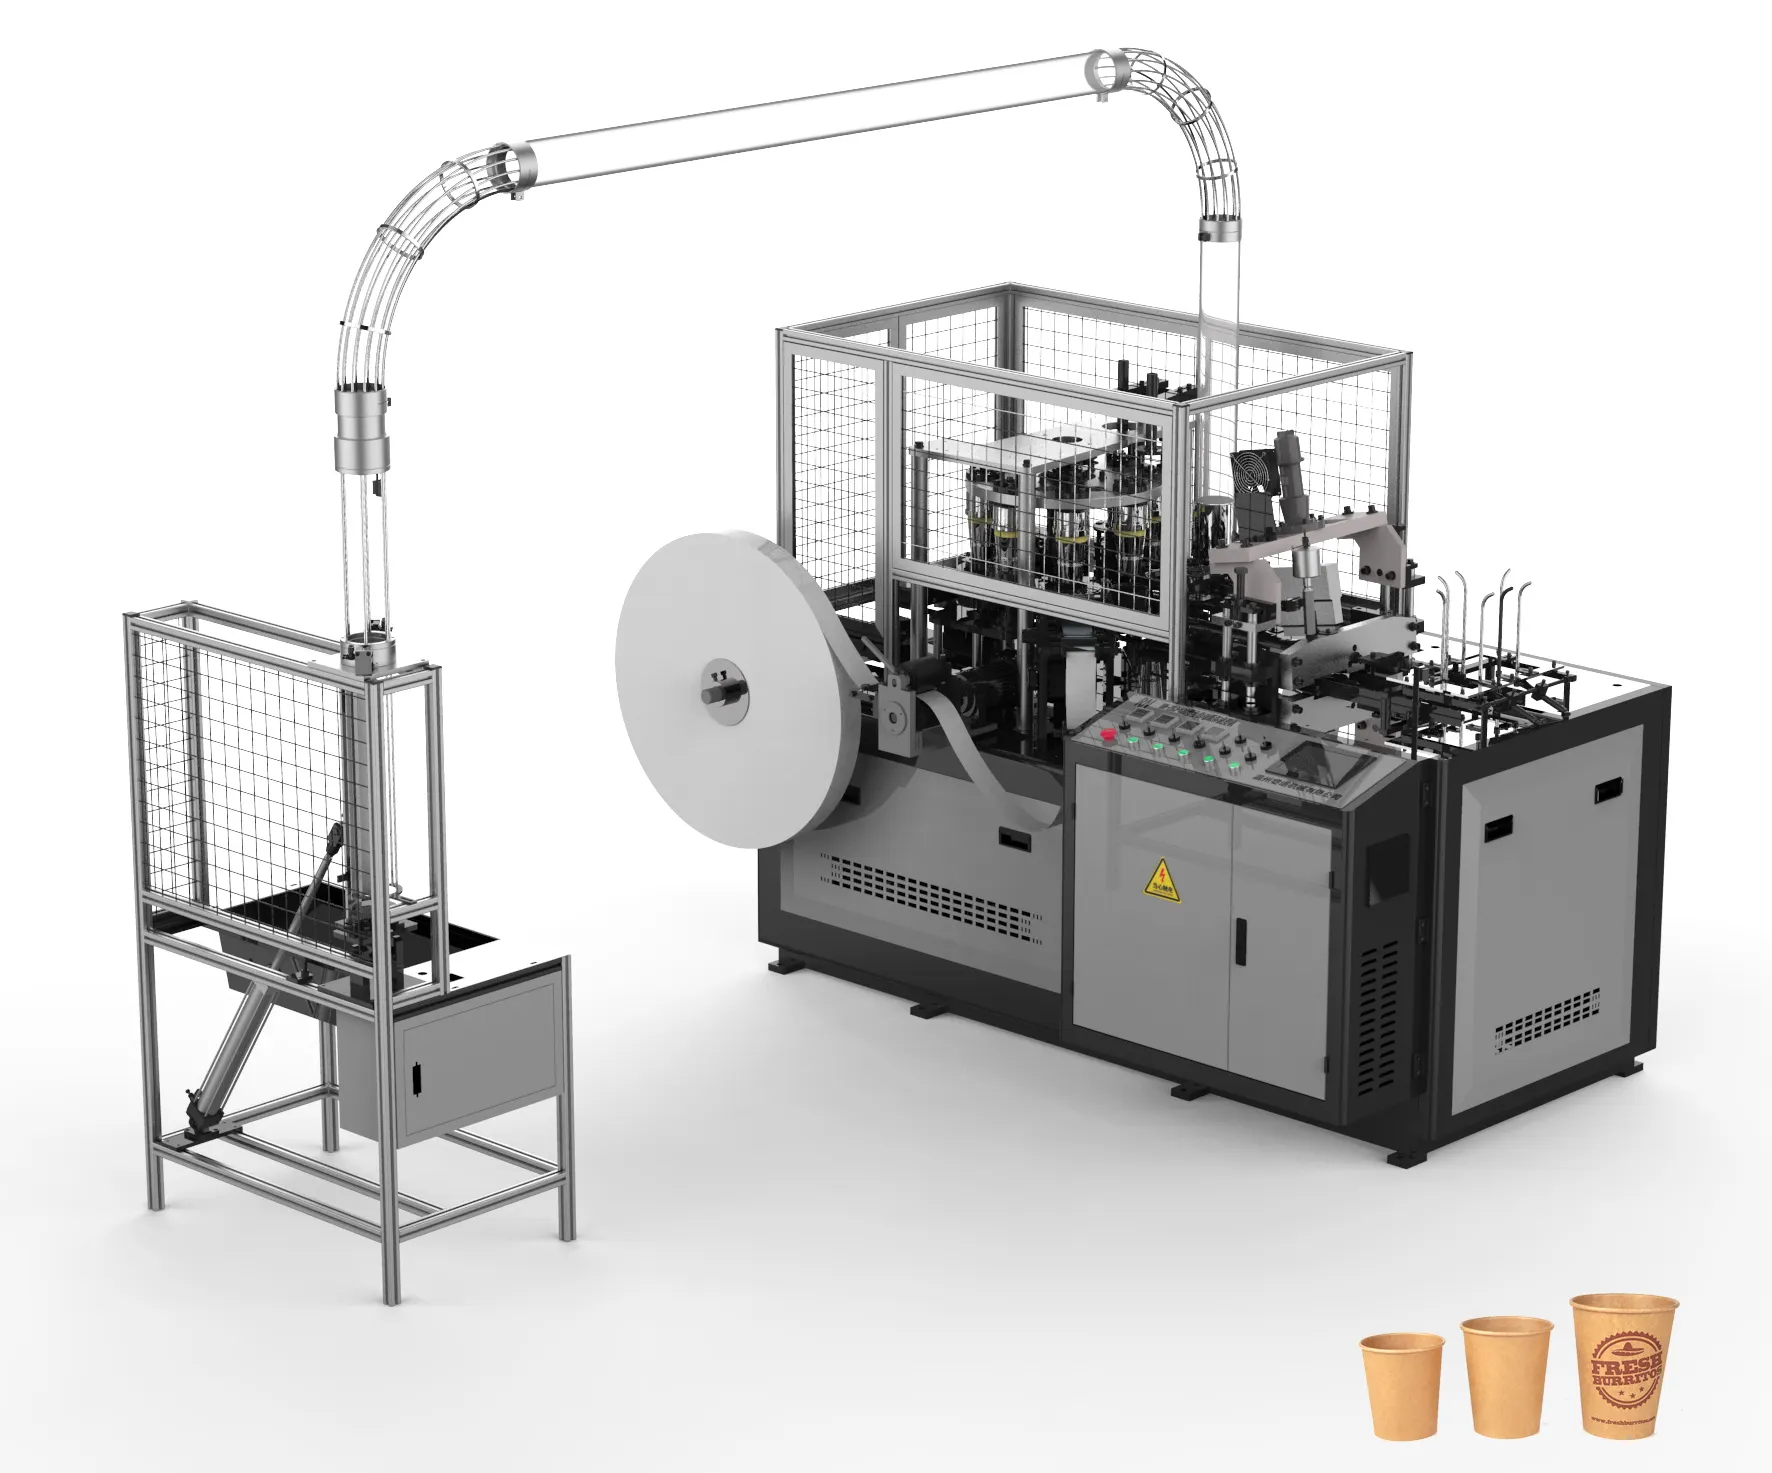 ماكينة صنع أكواب القهوة الورقية الأوتوماتيكية التي يمكن التخلص منها مزودة بختم حراري